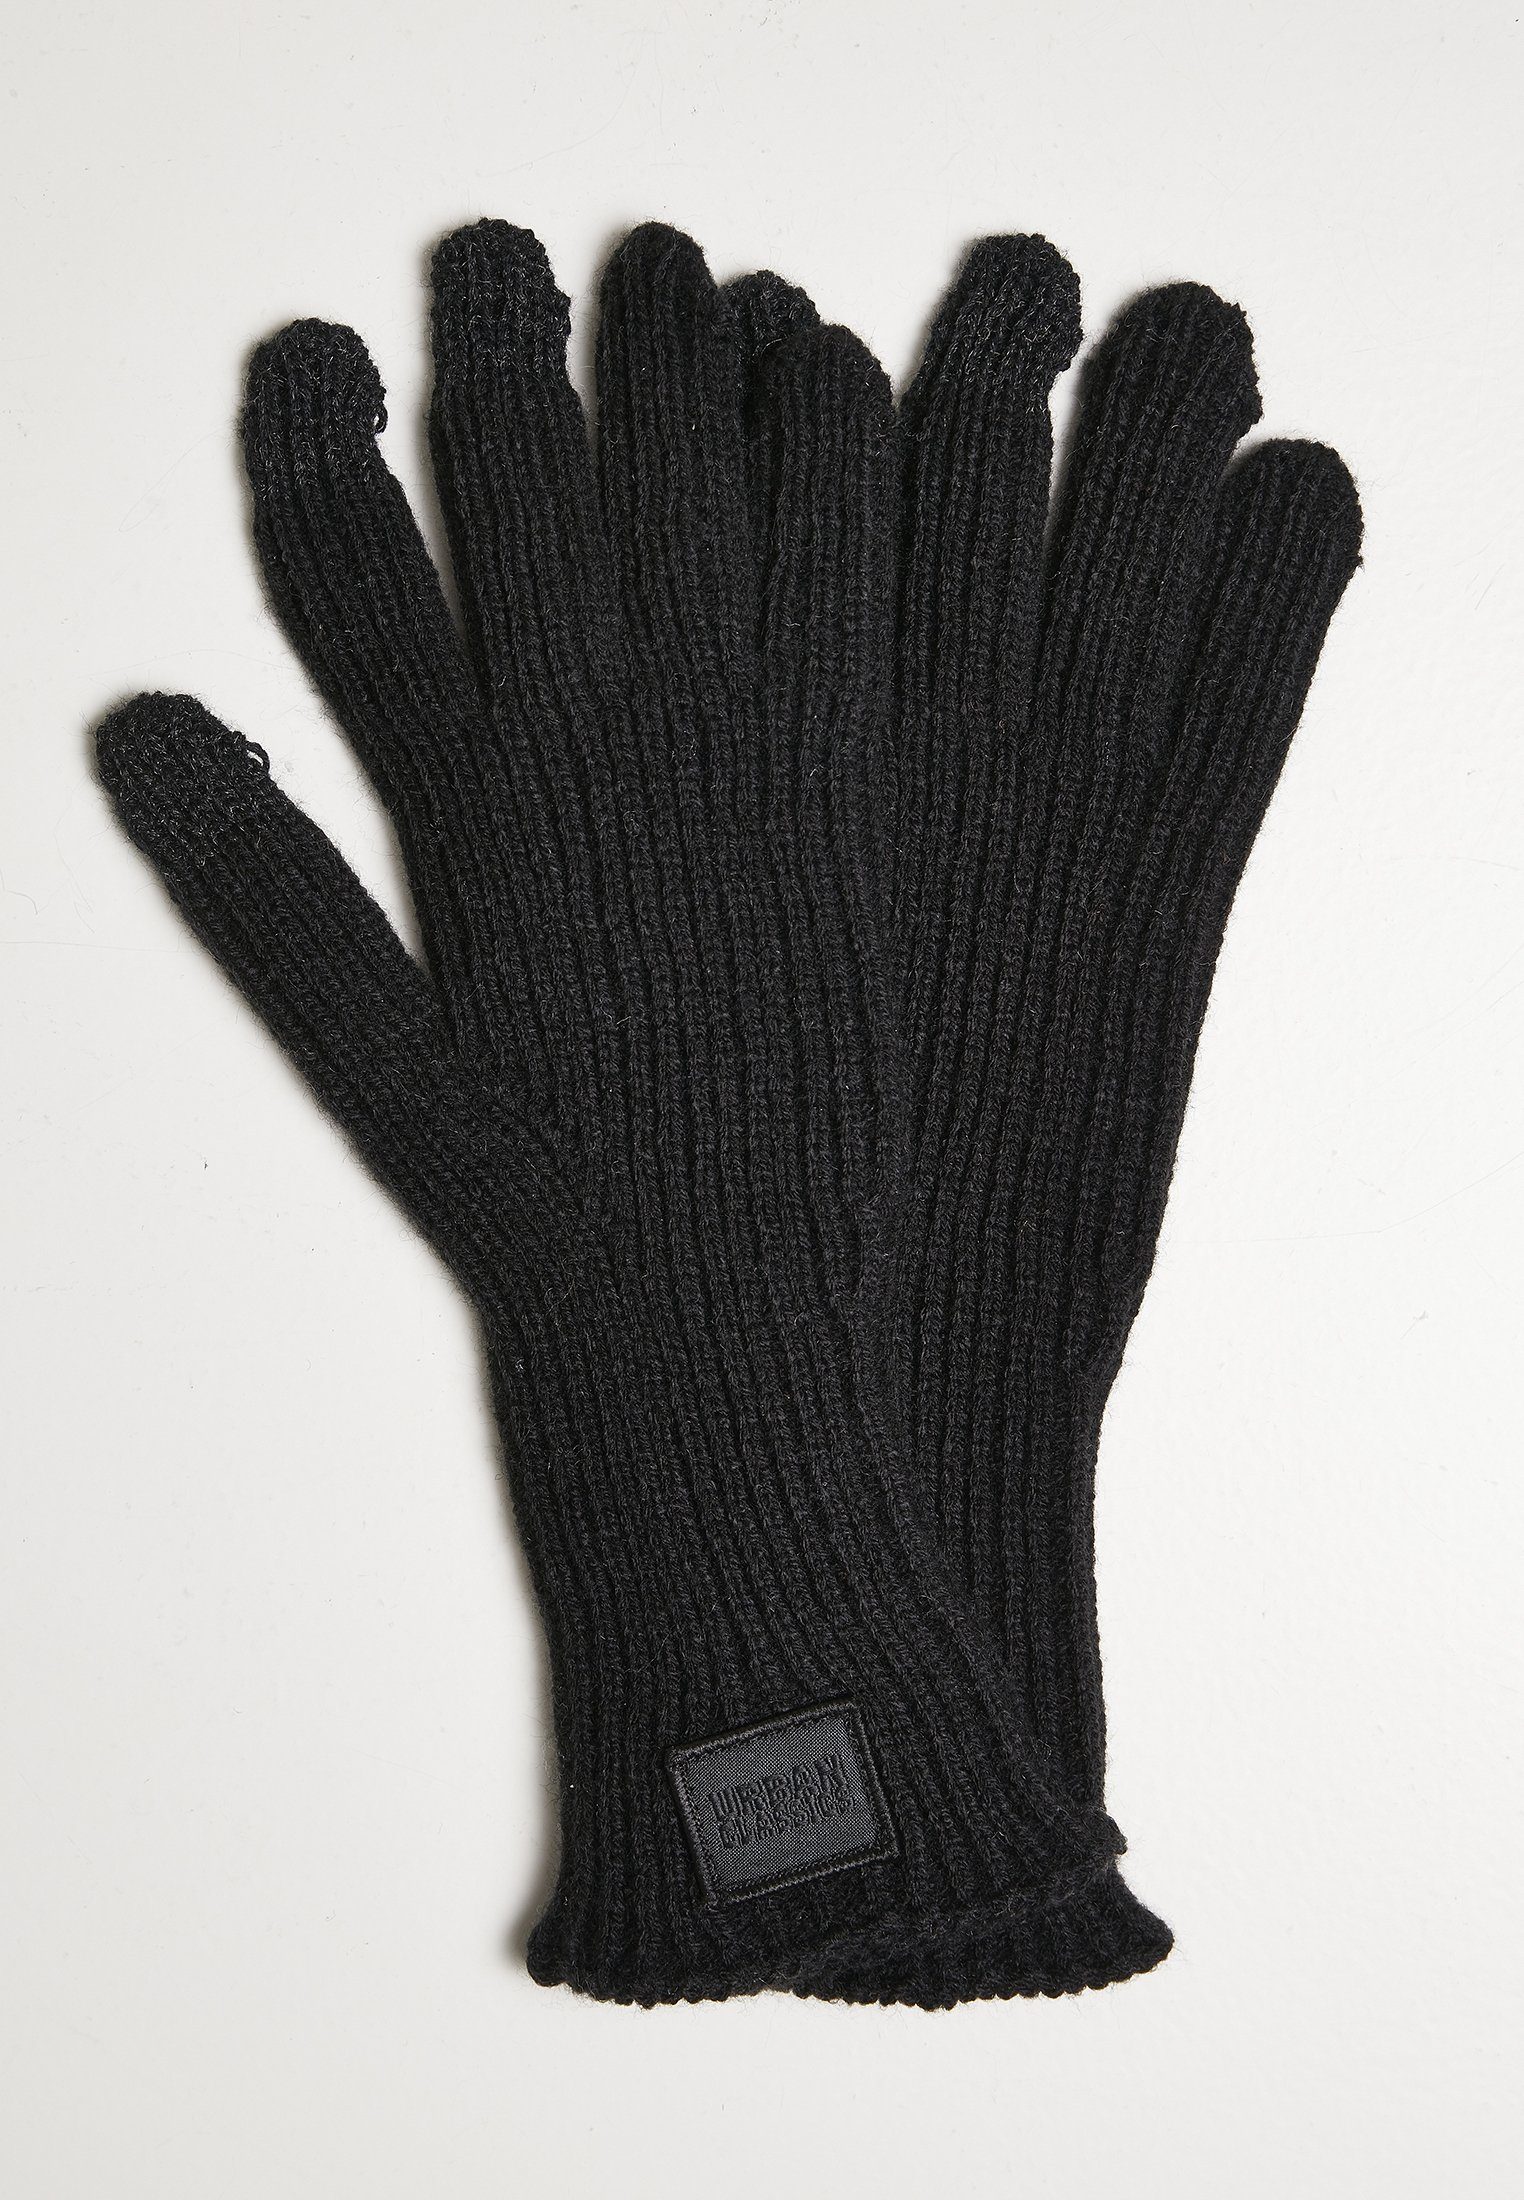 Kostengünstig URBAN CLASSICS Baumwollhandschuhe Unisex black Smart Mix Gloves Wool Knitted